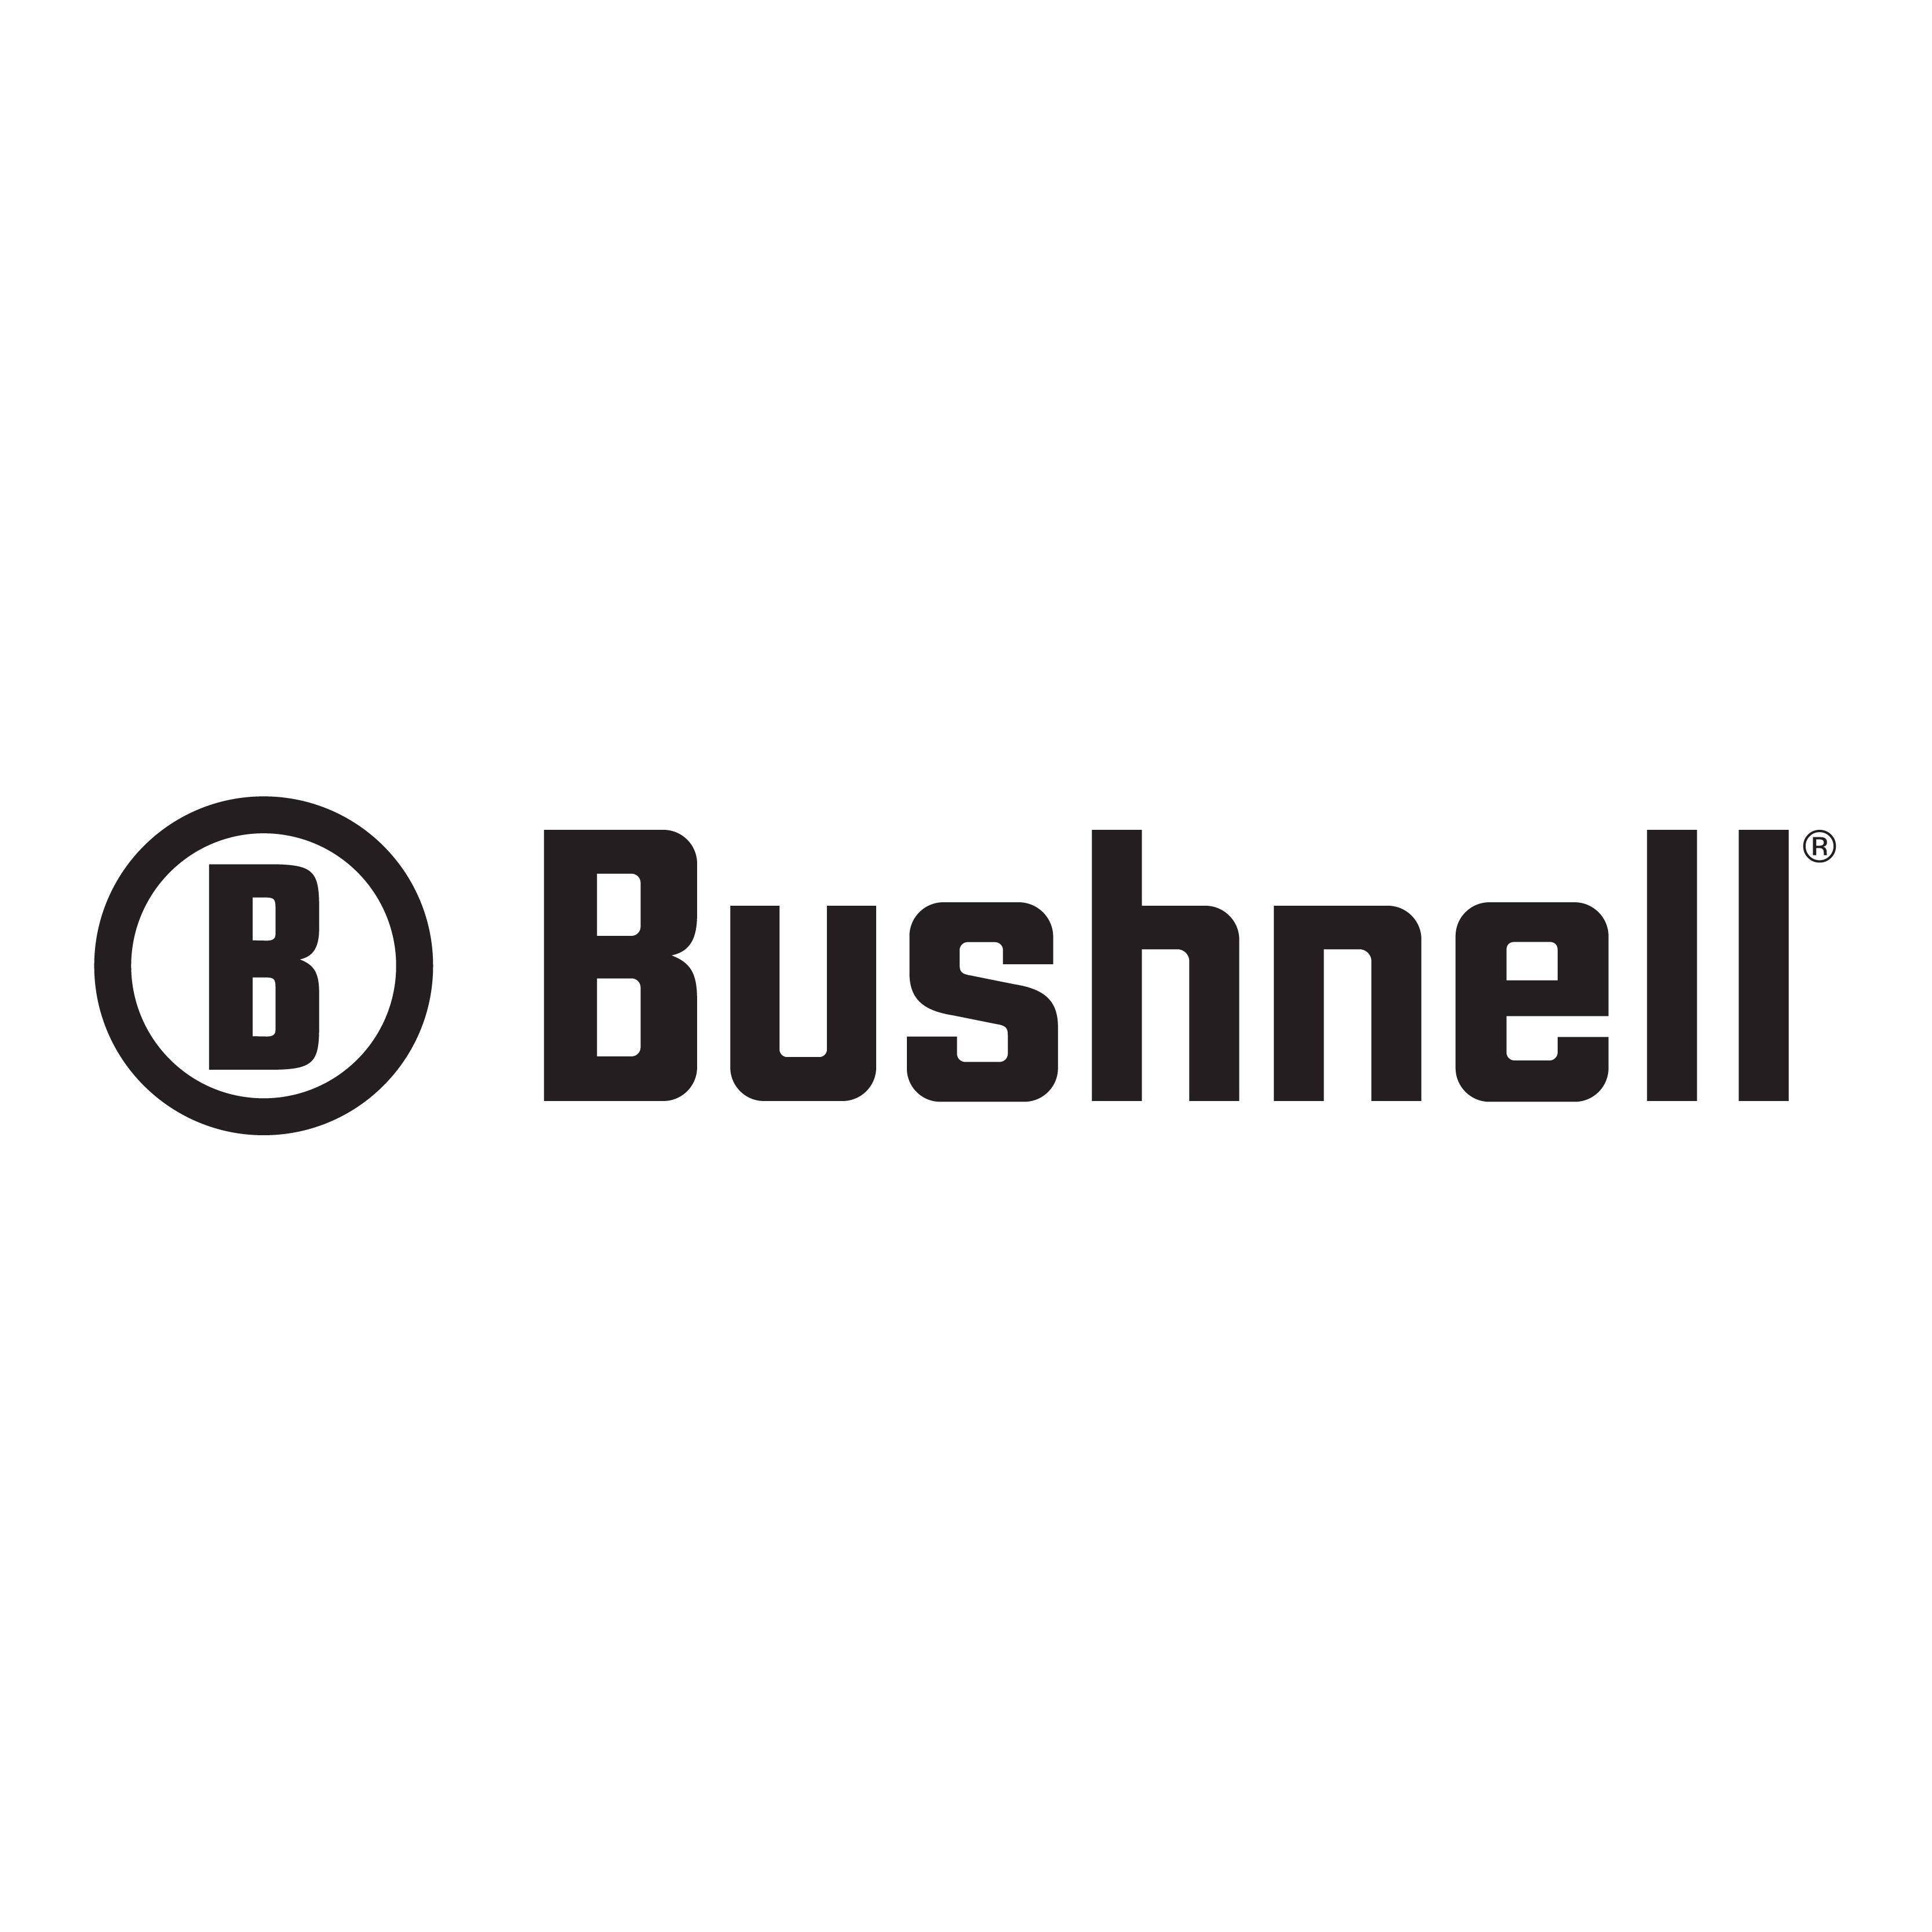 Bushnell Logo - Image result for bushnell logo